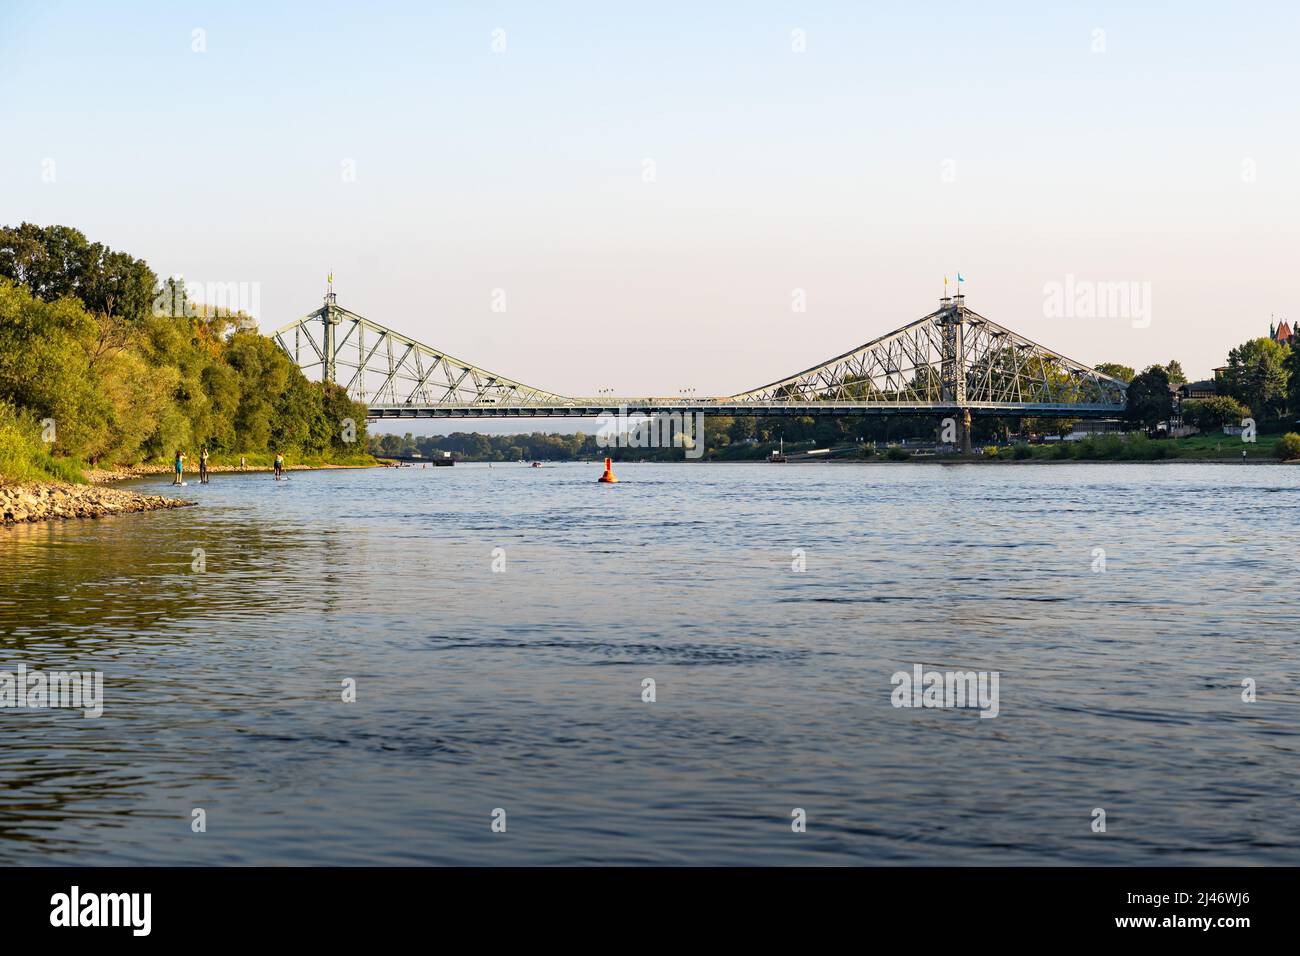 Die berühmte Loschwitz-Brücke von einem Boot aus gesehen. Das riesige Gebäude ist ein Reiseziel. Es handelt sich um eine freitragende Fachwerkbrücke über die Elbe. Stockfoto